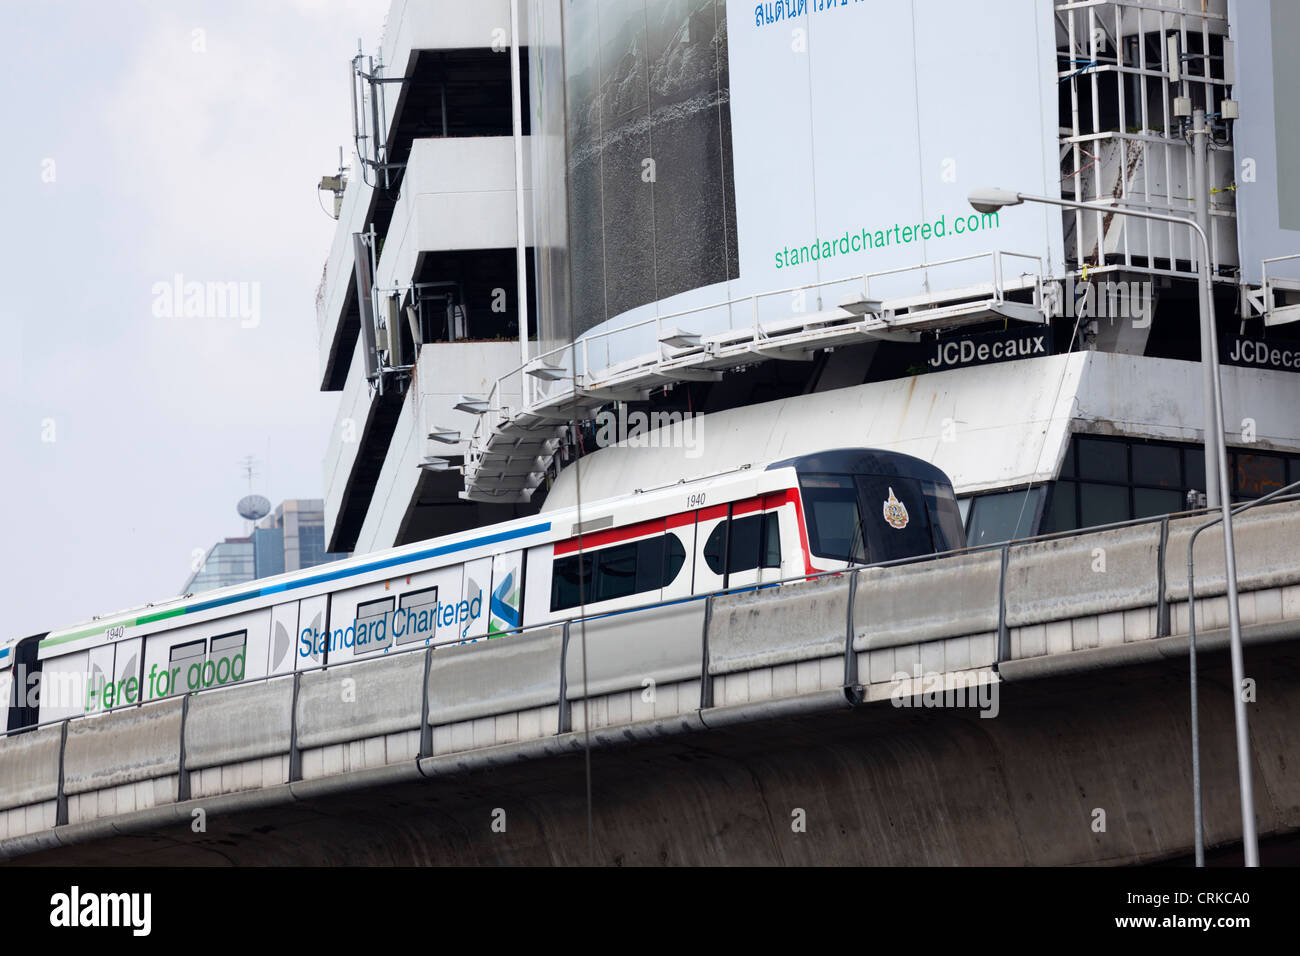 La rampa di Bangkok in base mass transit system o sky train, offre comodi e veloci e passeggiate attraverso il centro di Bangkok (Thailandia). Foto Stock